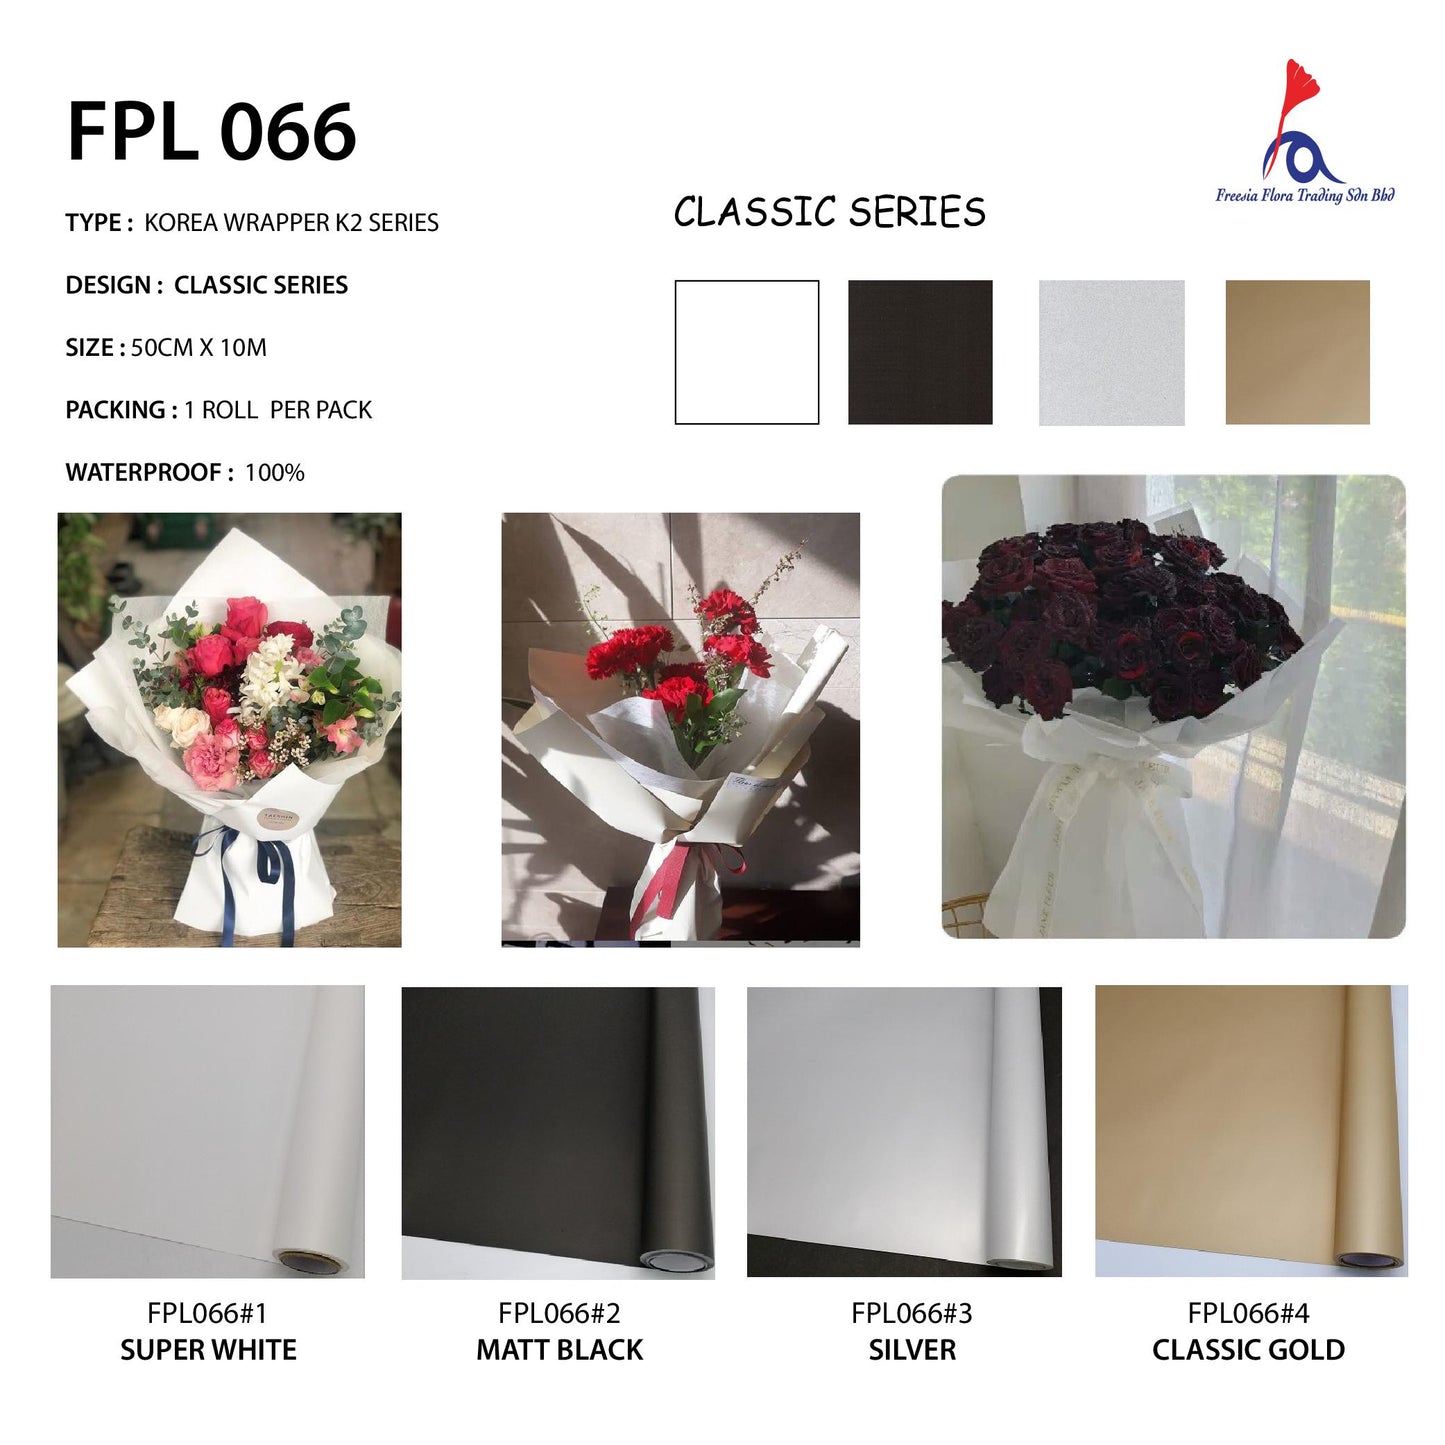 FPL066 K2 CLASSIC SERIES - Freesia